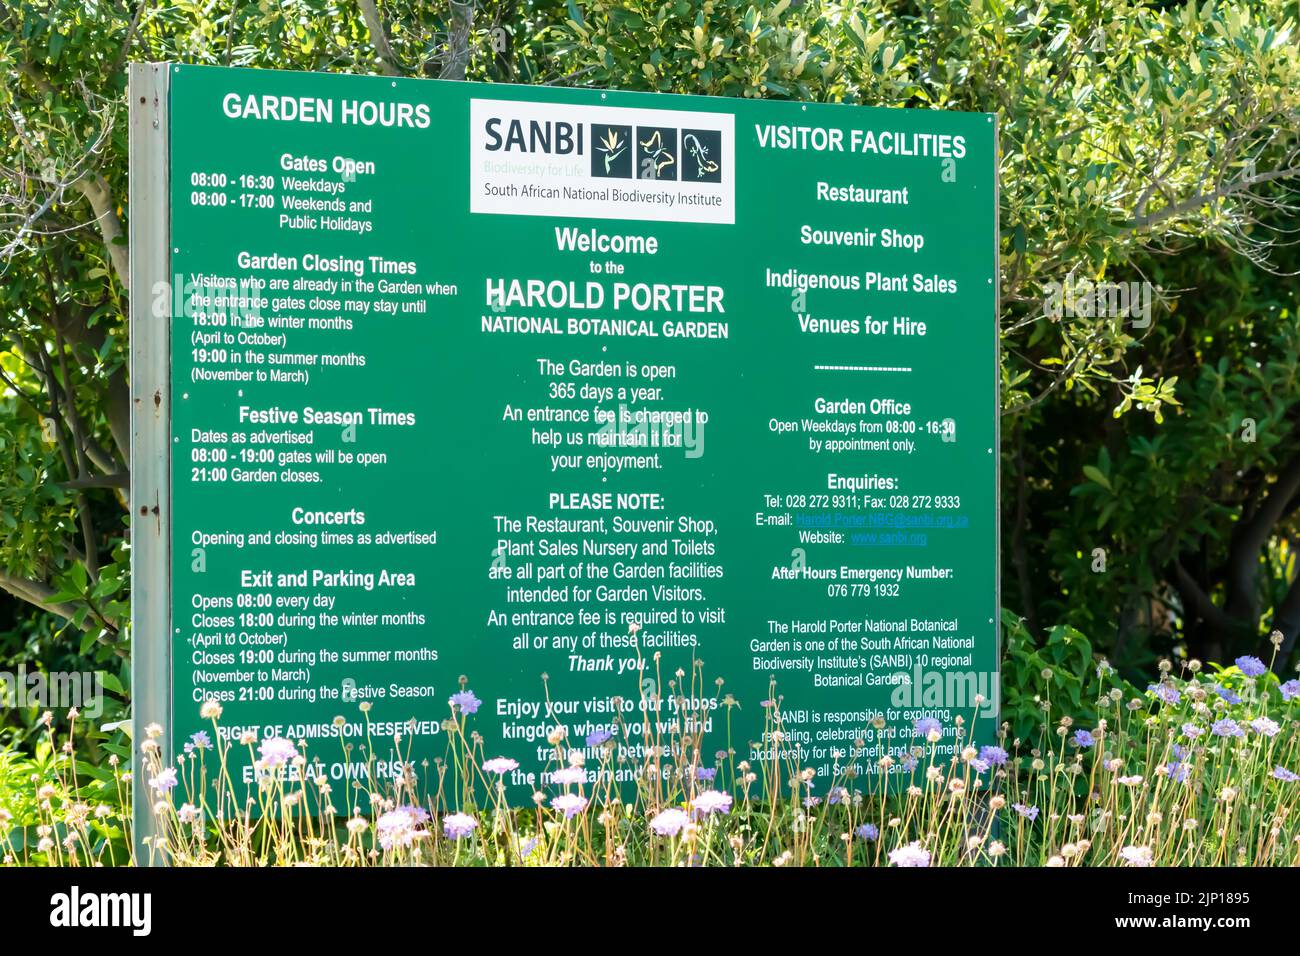 SANBI panneau ou signalisation informations pour les visiteurs du jardin botanique national Harold porter à Betty's Bay, Western Cape, South Africa concept Travel Banque D'Images